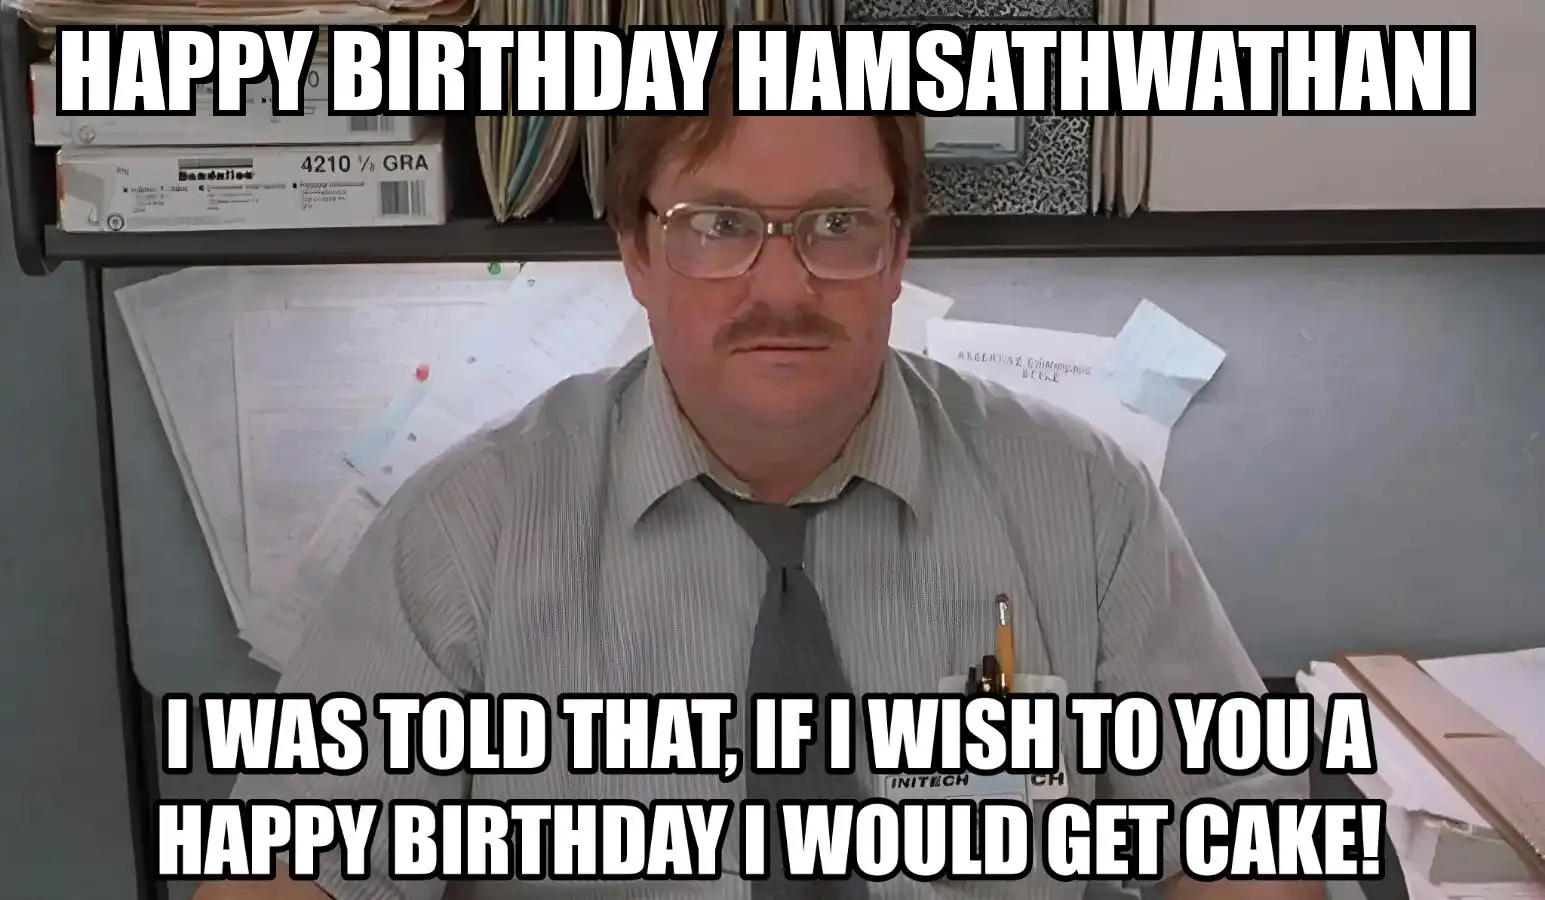 Happy Birthday Hamsathwathani I Would Get A Cake Meme